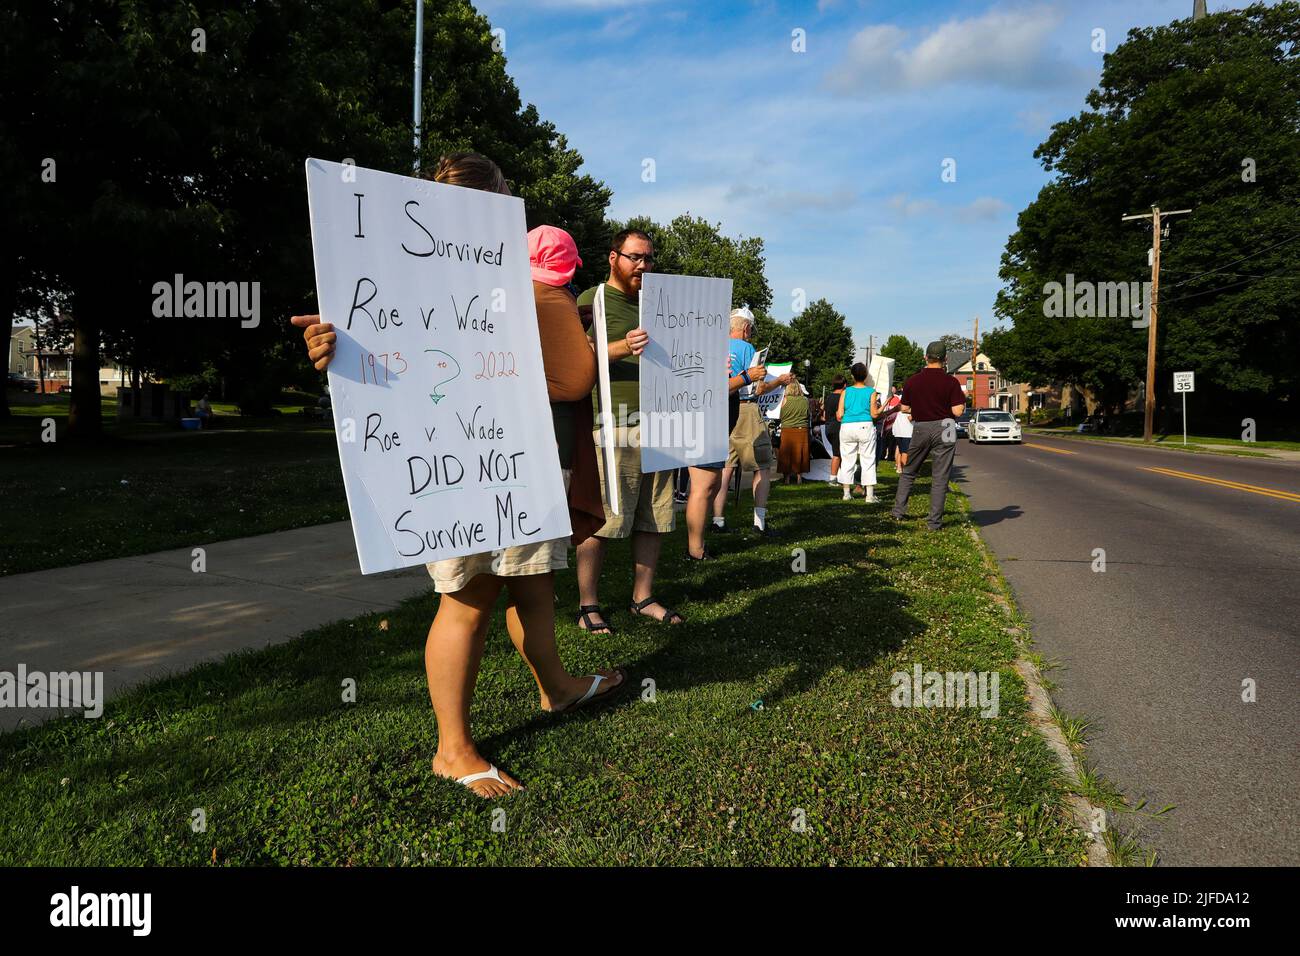 Danville, États-Unis. 01st juillet 2022. Des manifestants tiennent des pancartes à Memorial Park lors d'une manifestation contre un rassemblement sur les droits à l'avortement. Environ 50 manifestants pour les droits anti-avortement ont protesté alors que plus de 100 défenseurs des droits à l'avortement se sont ralliés dans le parc. Le rassemblement et les manifestations ont lieu une semaine après que la Cour suprême des États-Unis a renversé Roe c. Wade et mis fin au droit d'accès à l'avortement protégé par le gouvernement fédéral. Crédit : SOPA Images Limited/Alamy Live News Banque D'Images